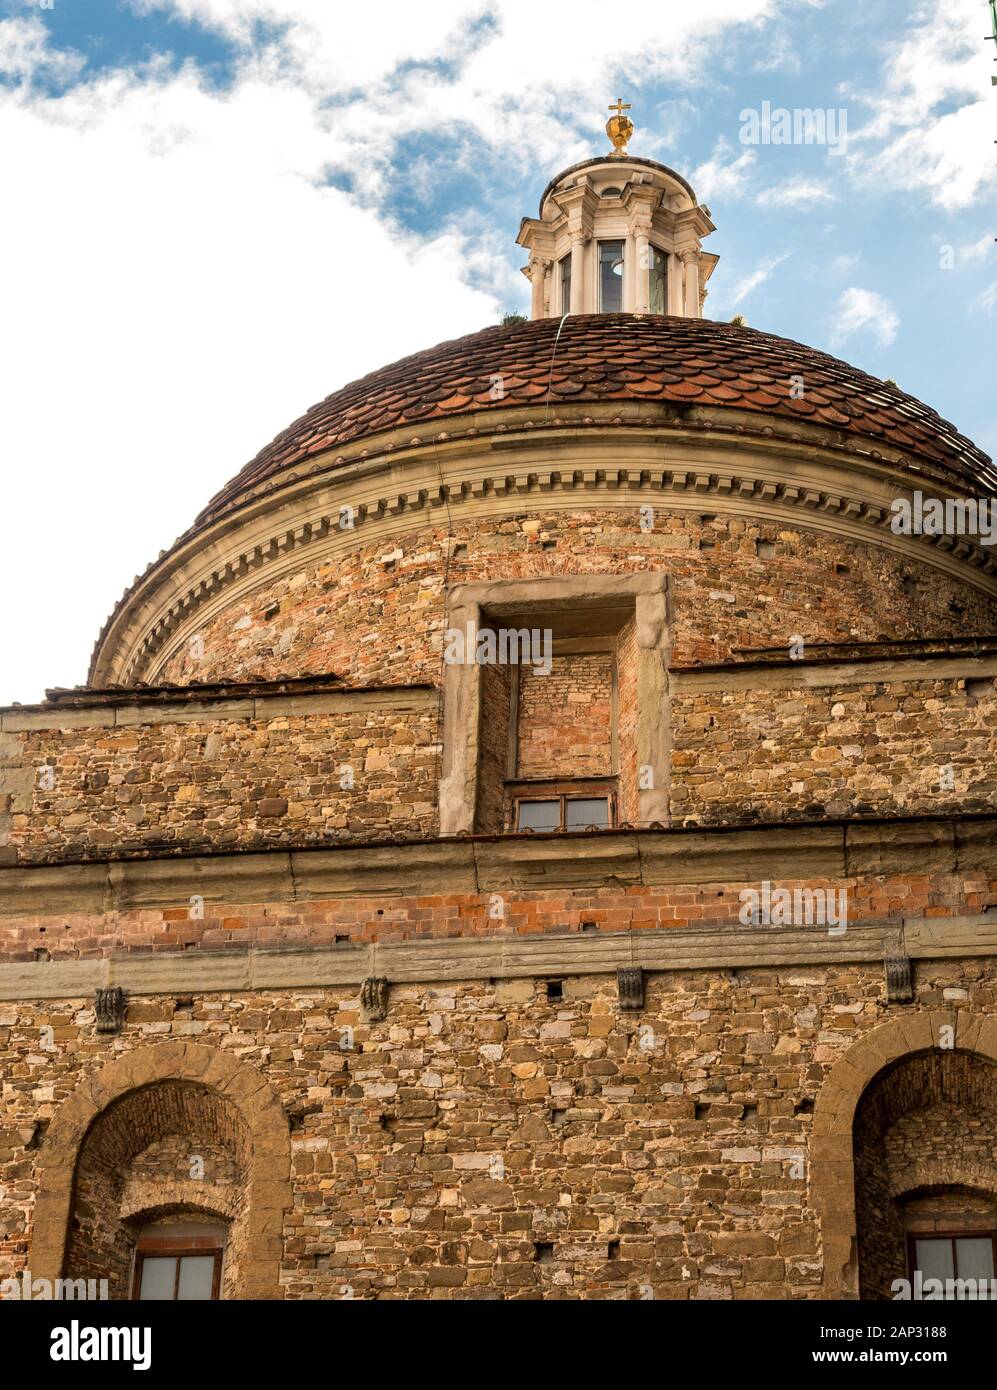 La Basilique di San Lorenzo l'église paroissiale de la famille Medici Florence Toscane Italie. Aussi le lieu de sépulture des Medici. Banque D'Images